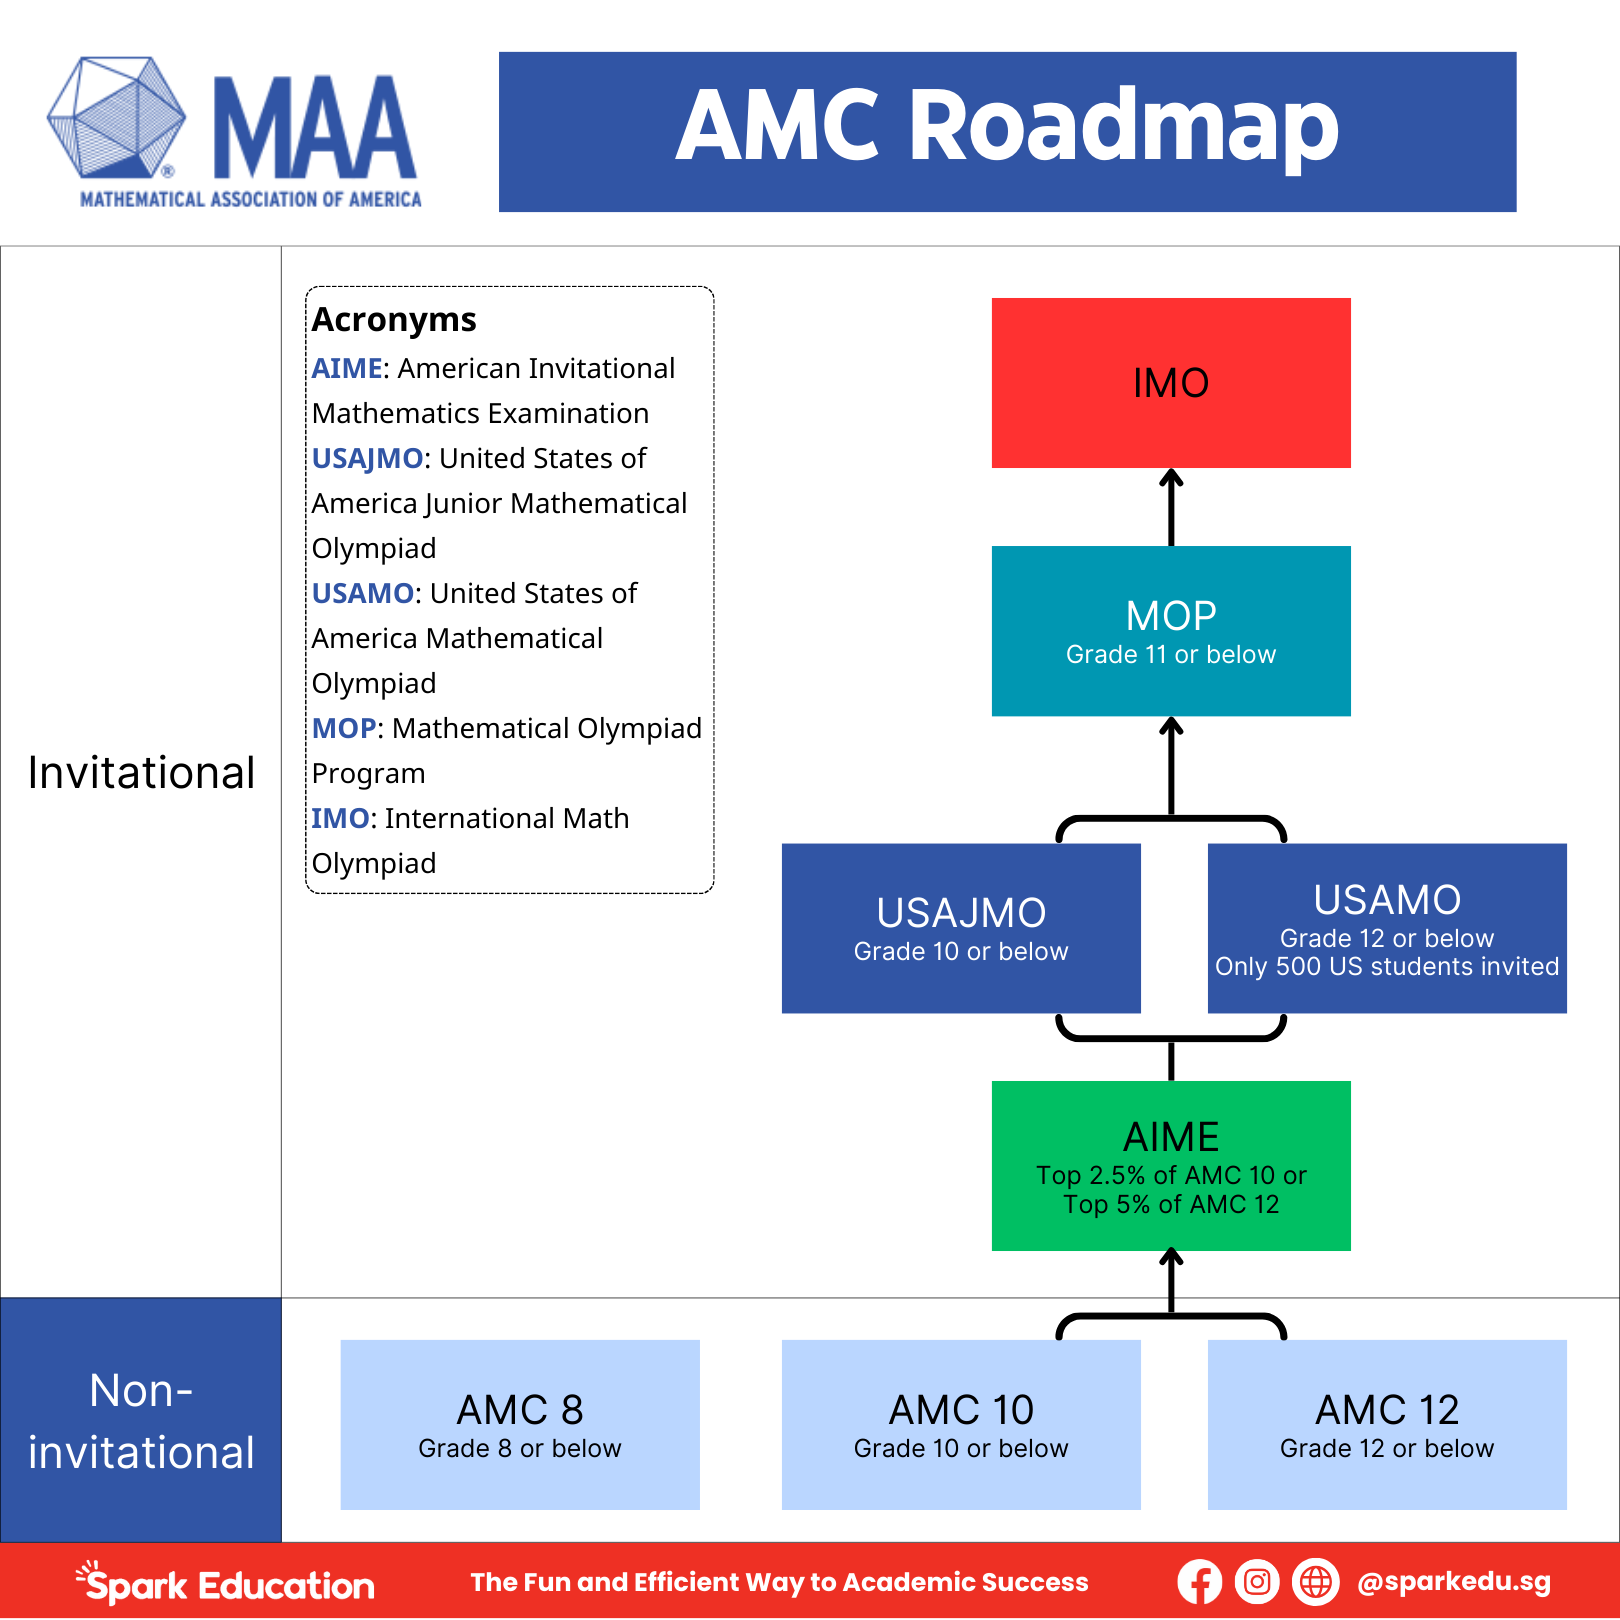 AMC roadmap